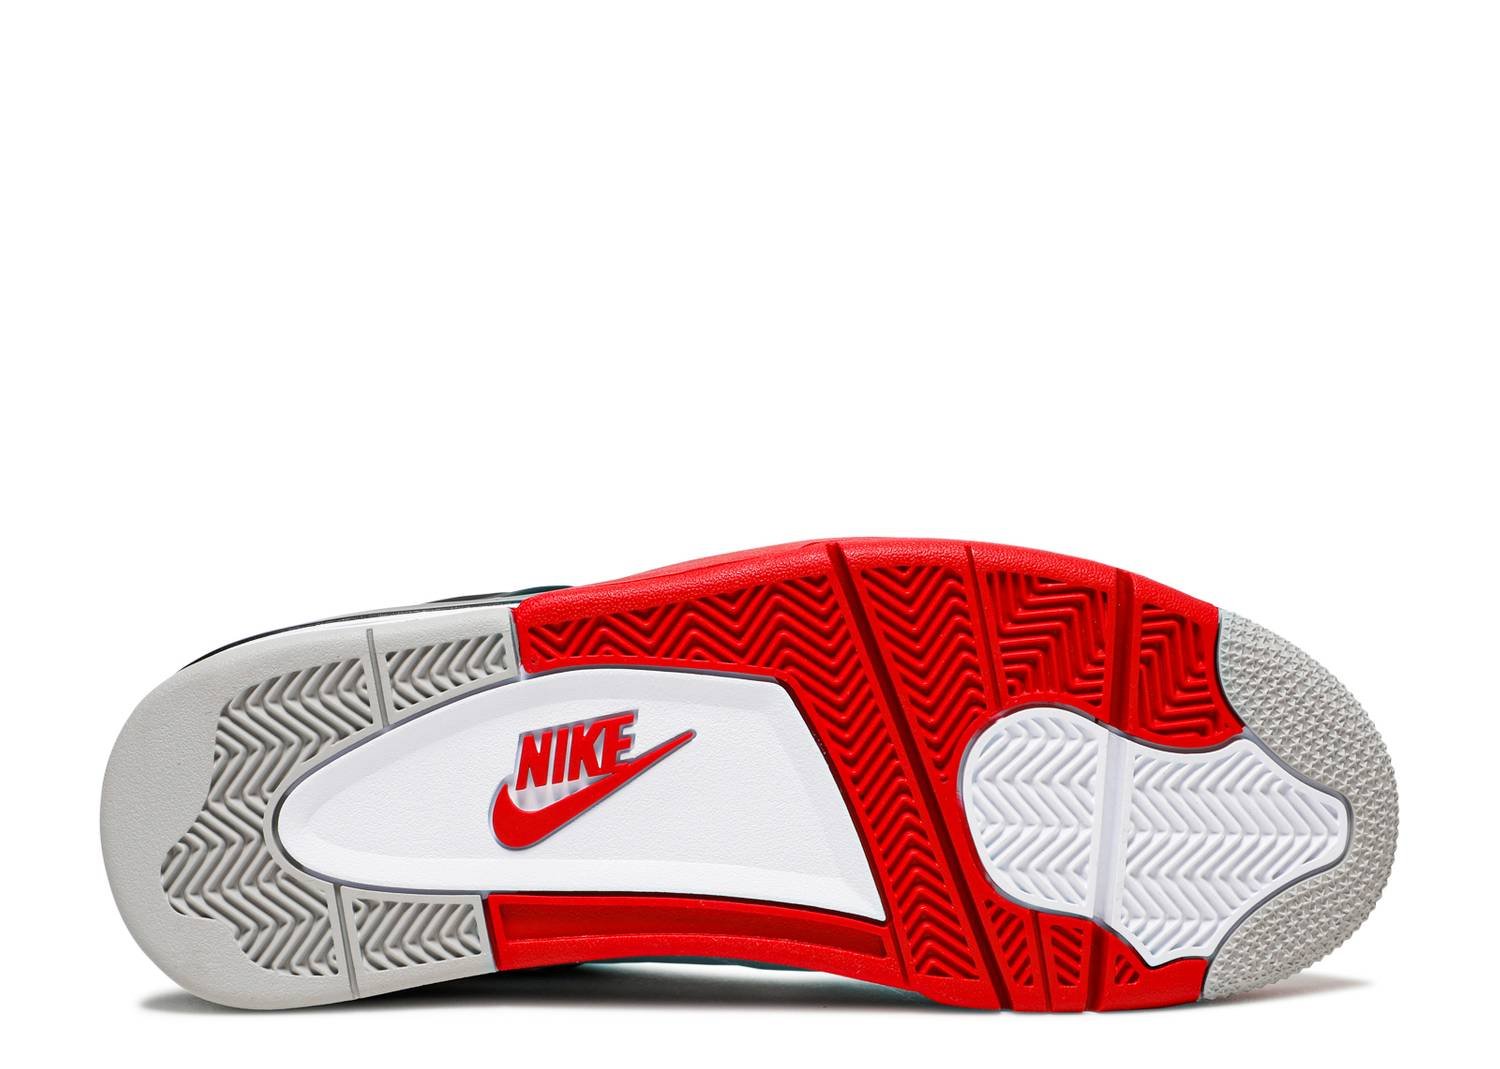 Image of Nike Retro Air Jordan 4 "Fire Red" 